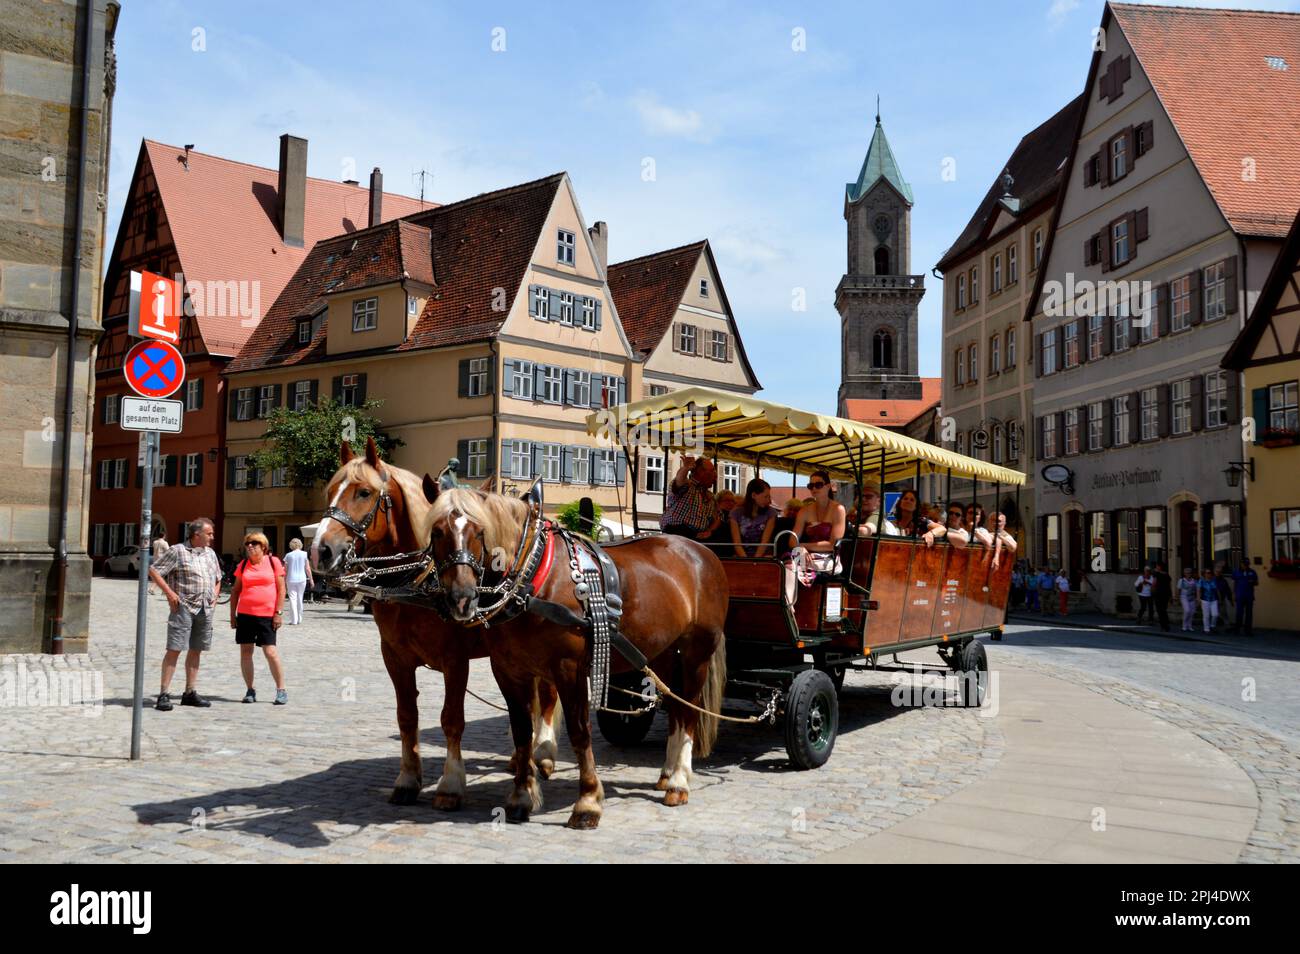 Germania, Baviera, Mittelfranken, Dinkelsbühl: Una carrozza trainata da cavalli che porta i visitatori attraverso la piazza del mercato. Foto Stock